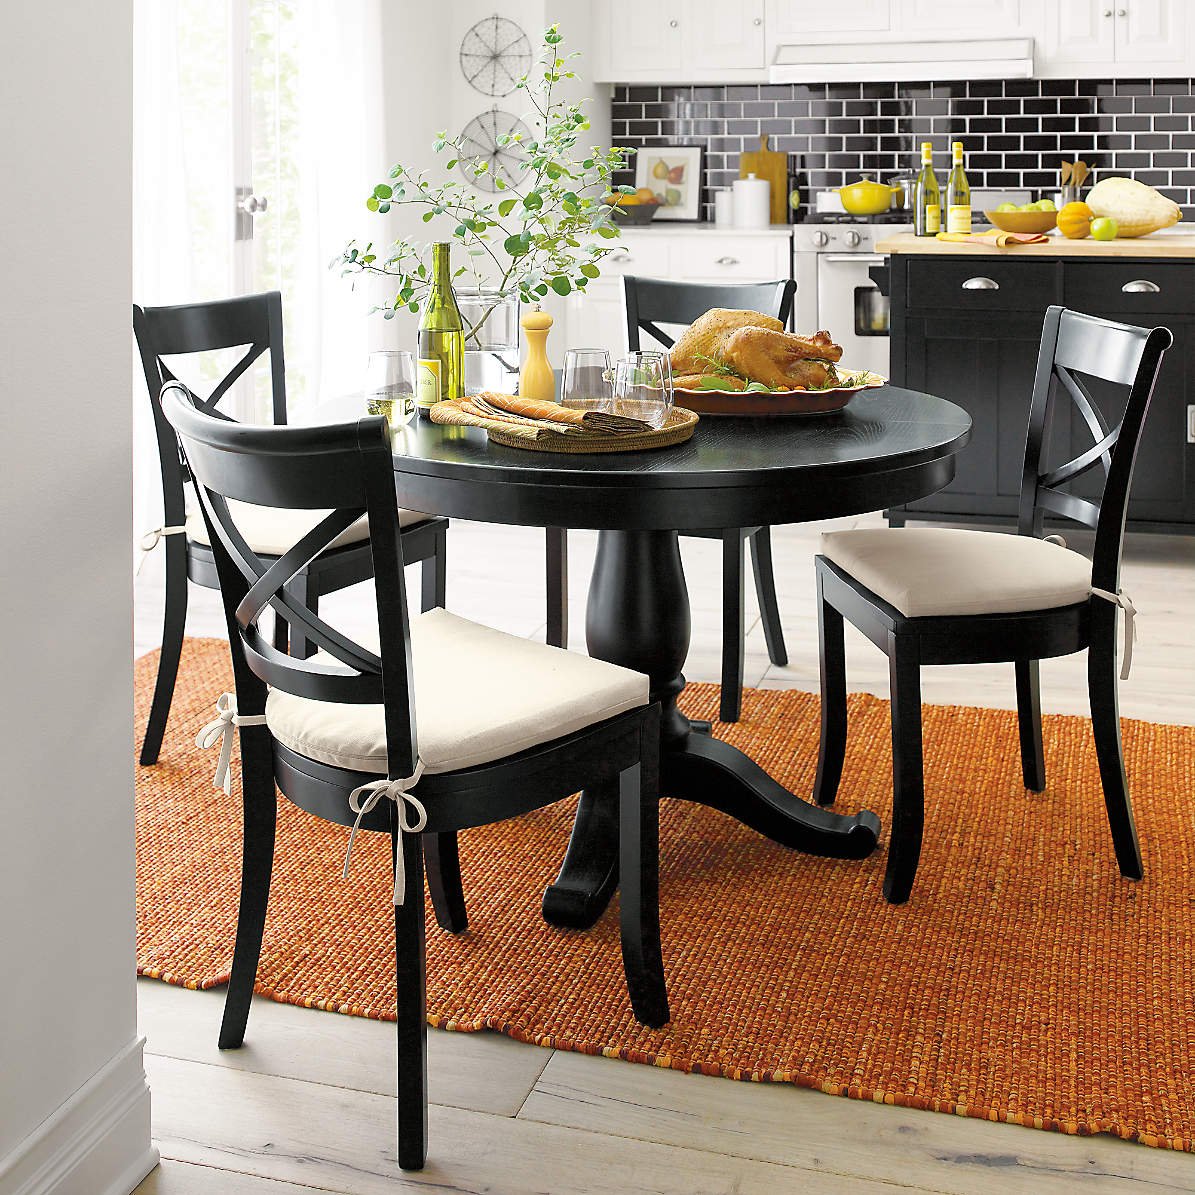 Черный стол на кухне. Стол Lakri Round Table. Стол икеа черный кухонный. Модные кухонные столы. Столы и стулья для кухни.